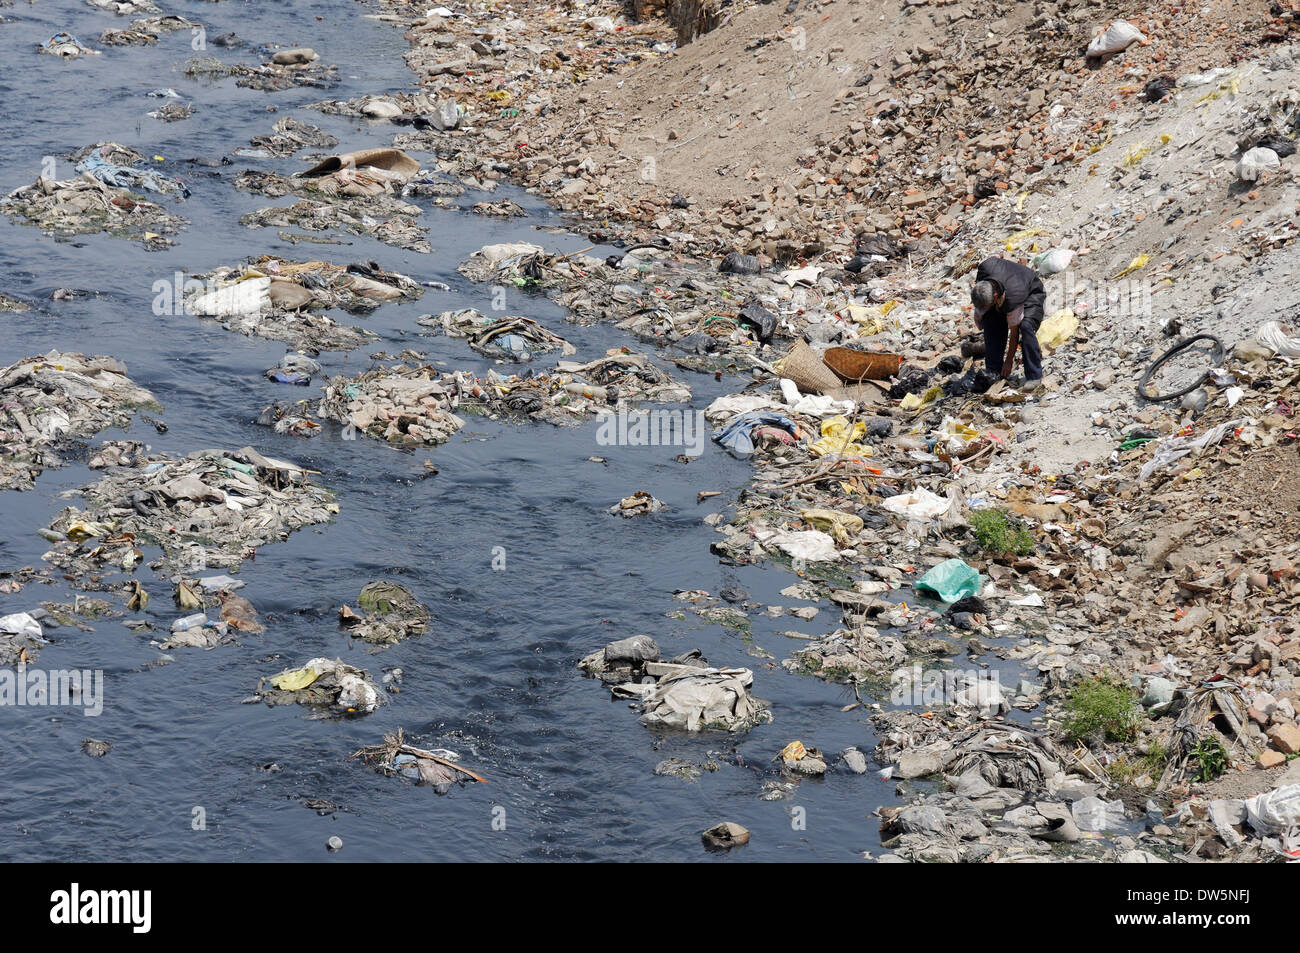 Un homme passant au crible les ordures au bord de la rivière Bagmati sales à Katmandou, Népal Banque D'Images